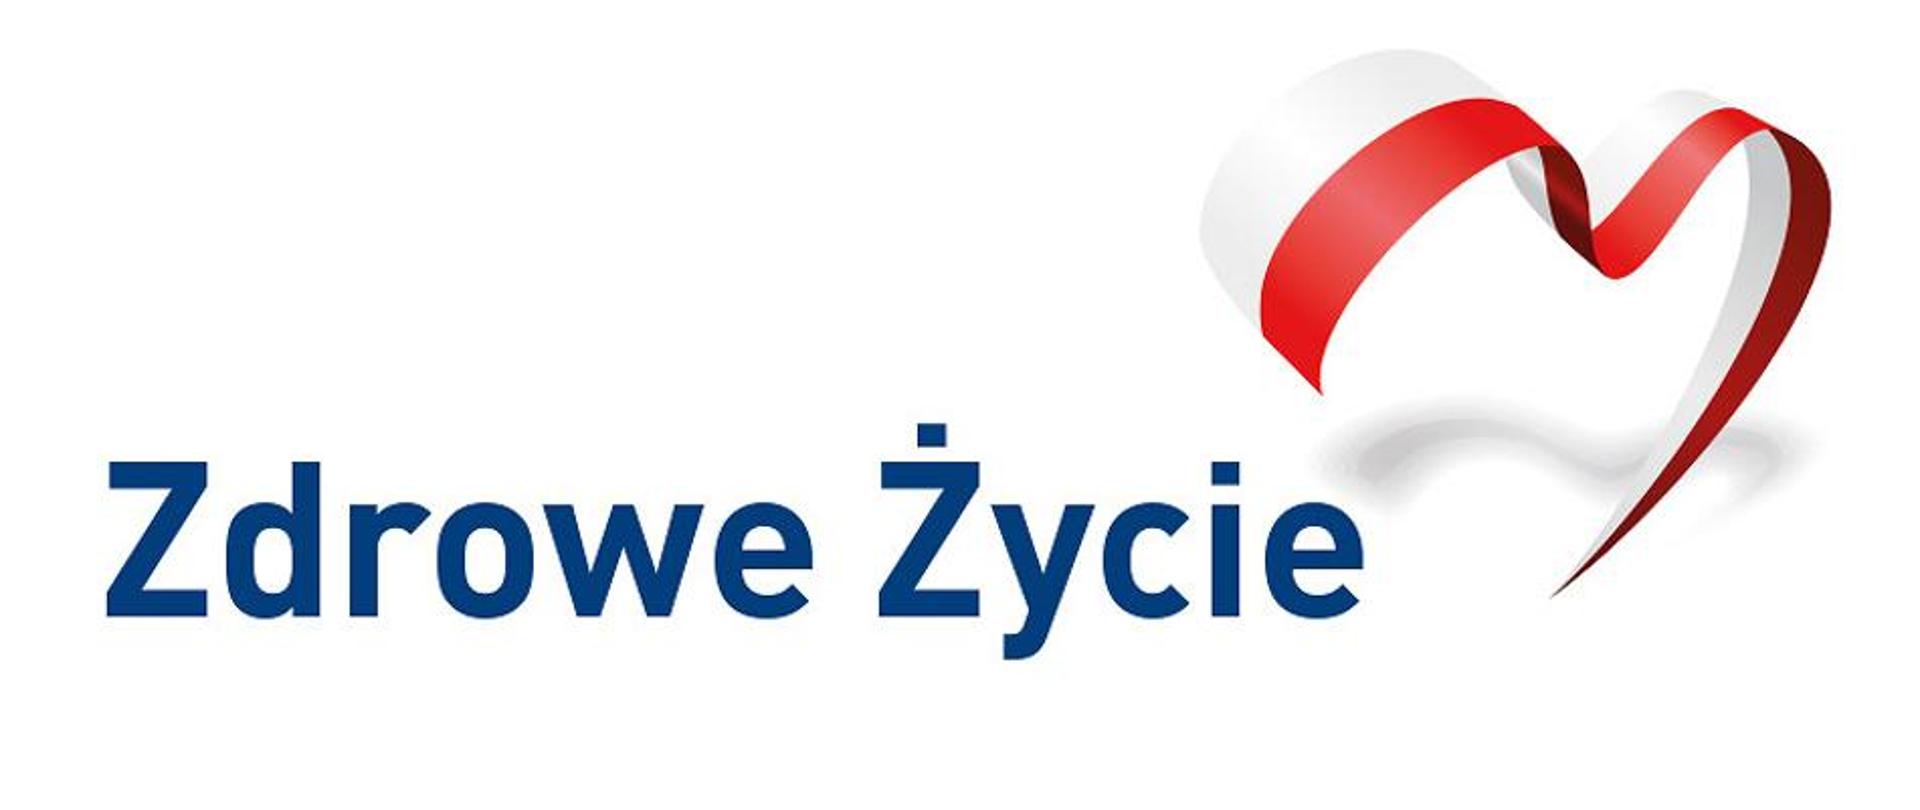 Obrazek z napisem Zdrowe Życie oraz flagą Polski w kształcie serca. 